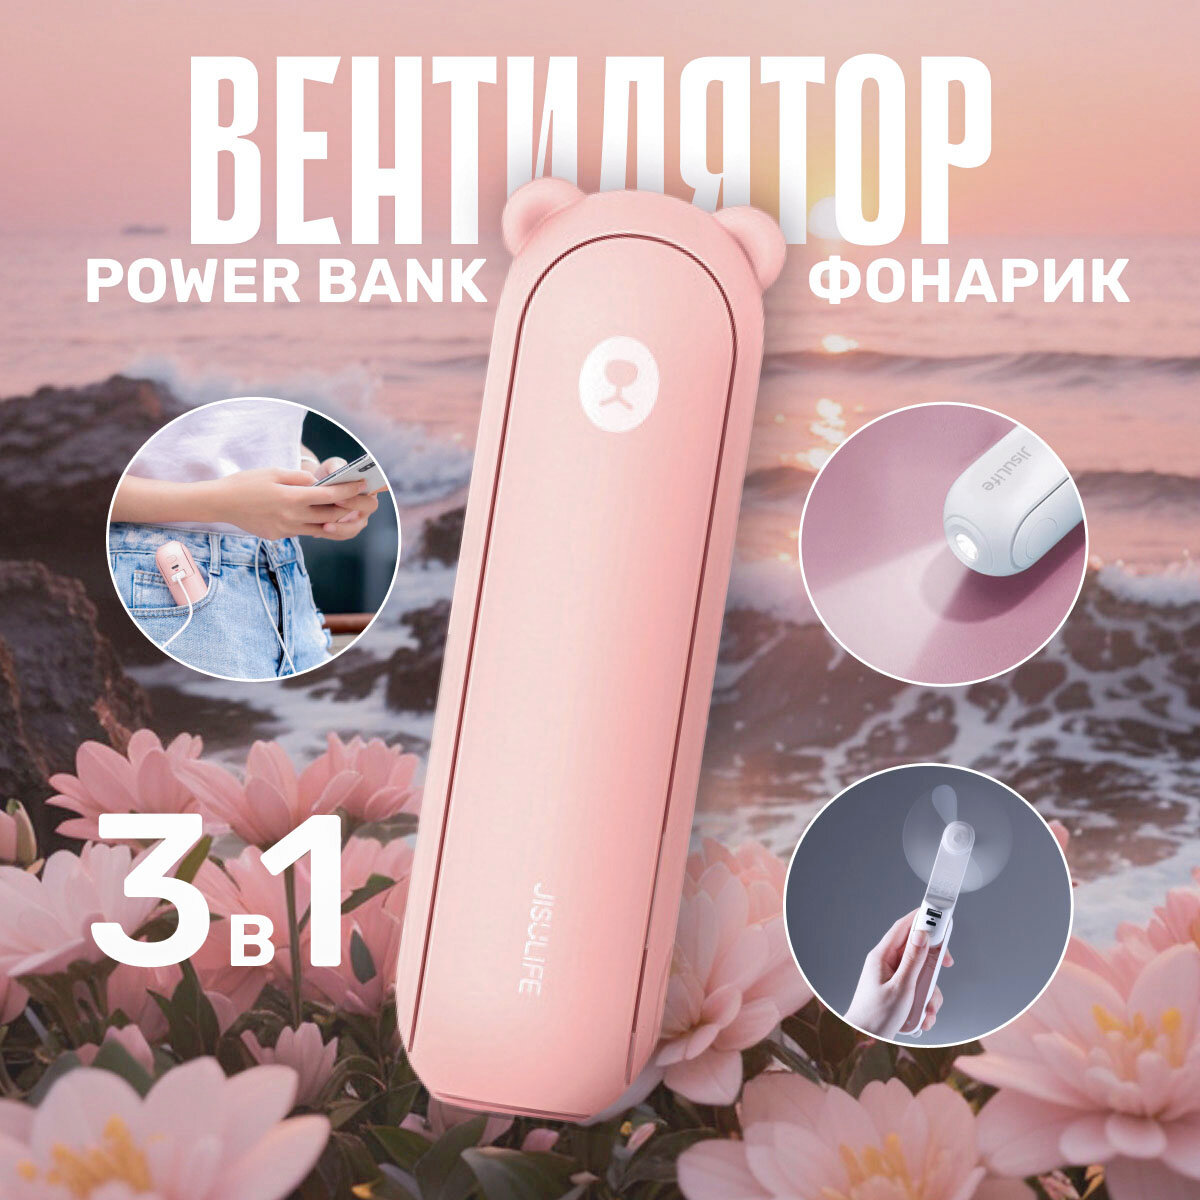 Вентилятор повербанк фонарик (3 в 1) Мишка розовый Bear Powerbank ручной, портативный, настольный (USB-кабель TYPE-C в комплекте), внешний аккумулятор, пауэрбанк